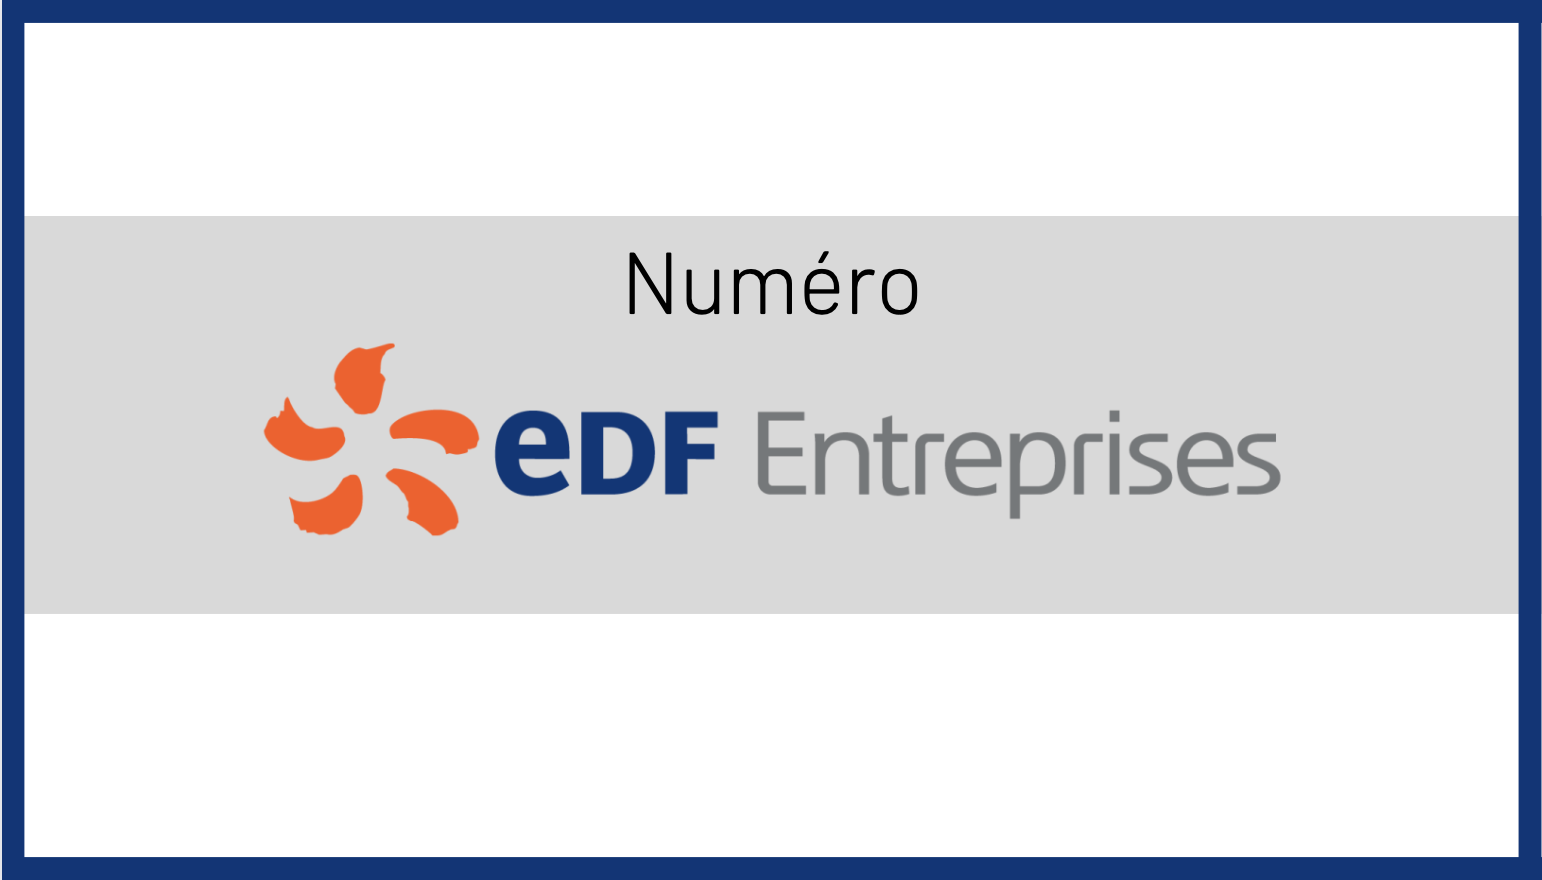 Les numéros EDF Entreprises